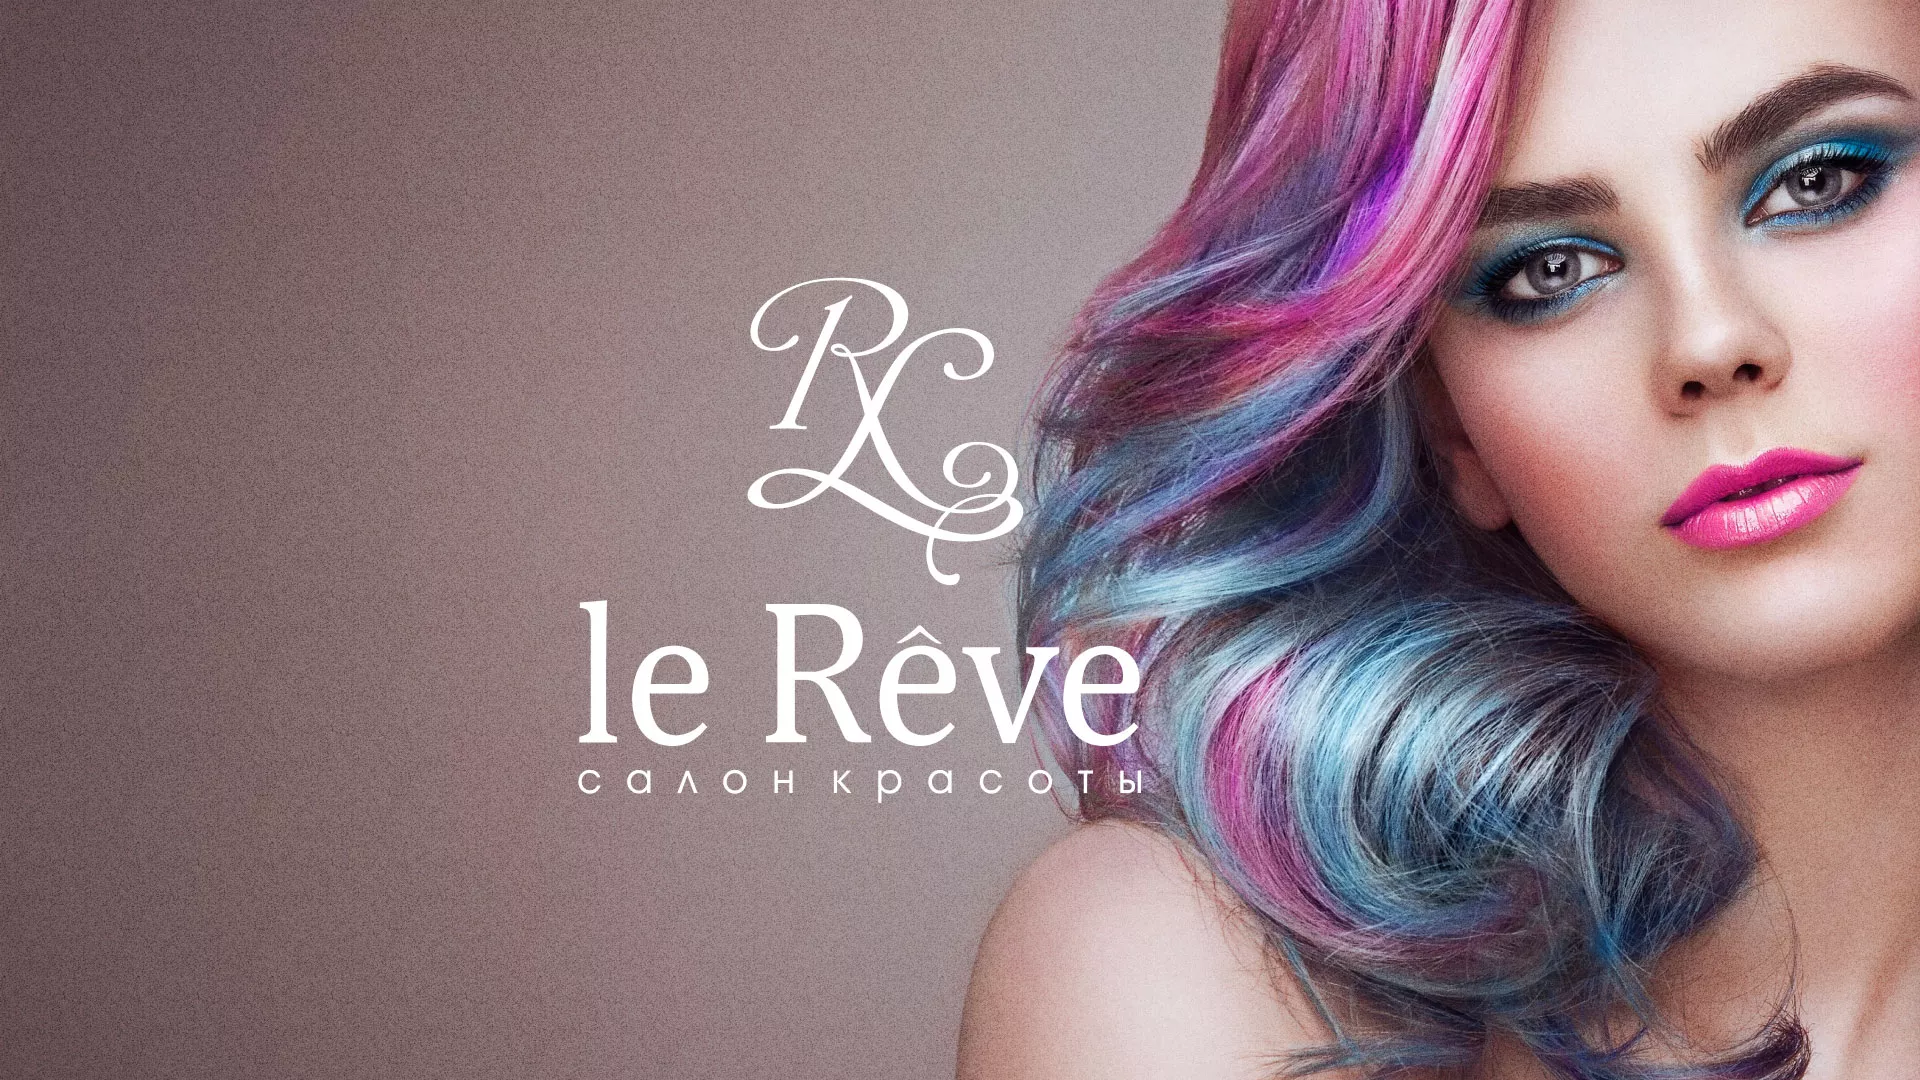 Создание сайта для салона красоты «Le Reve» в Задонске